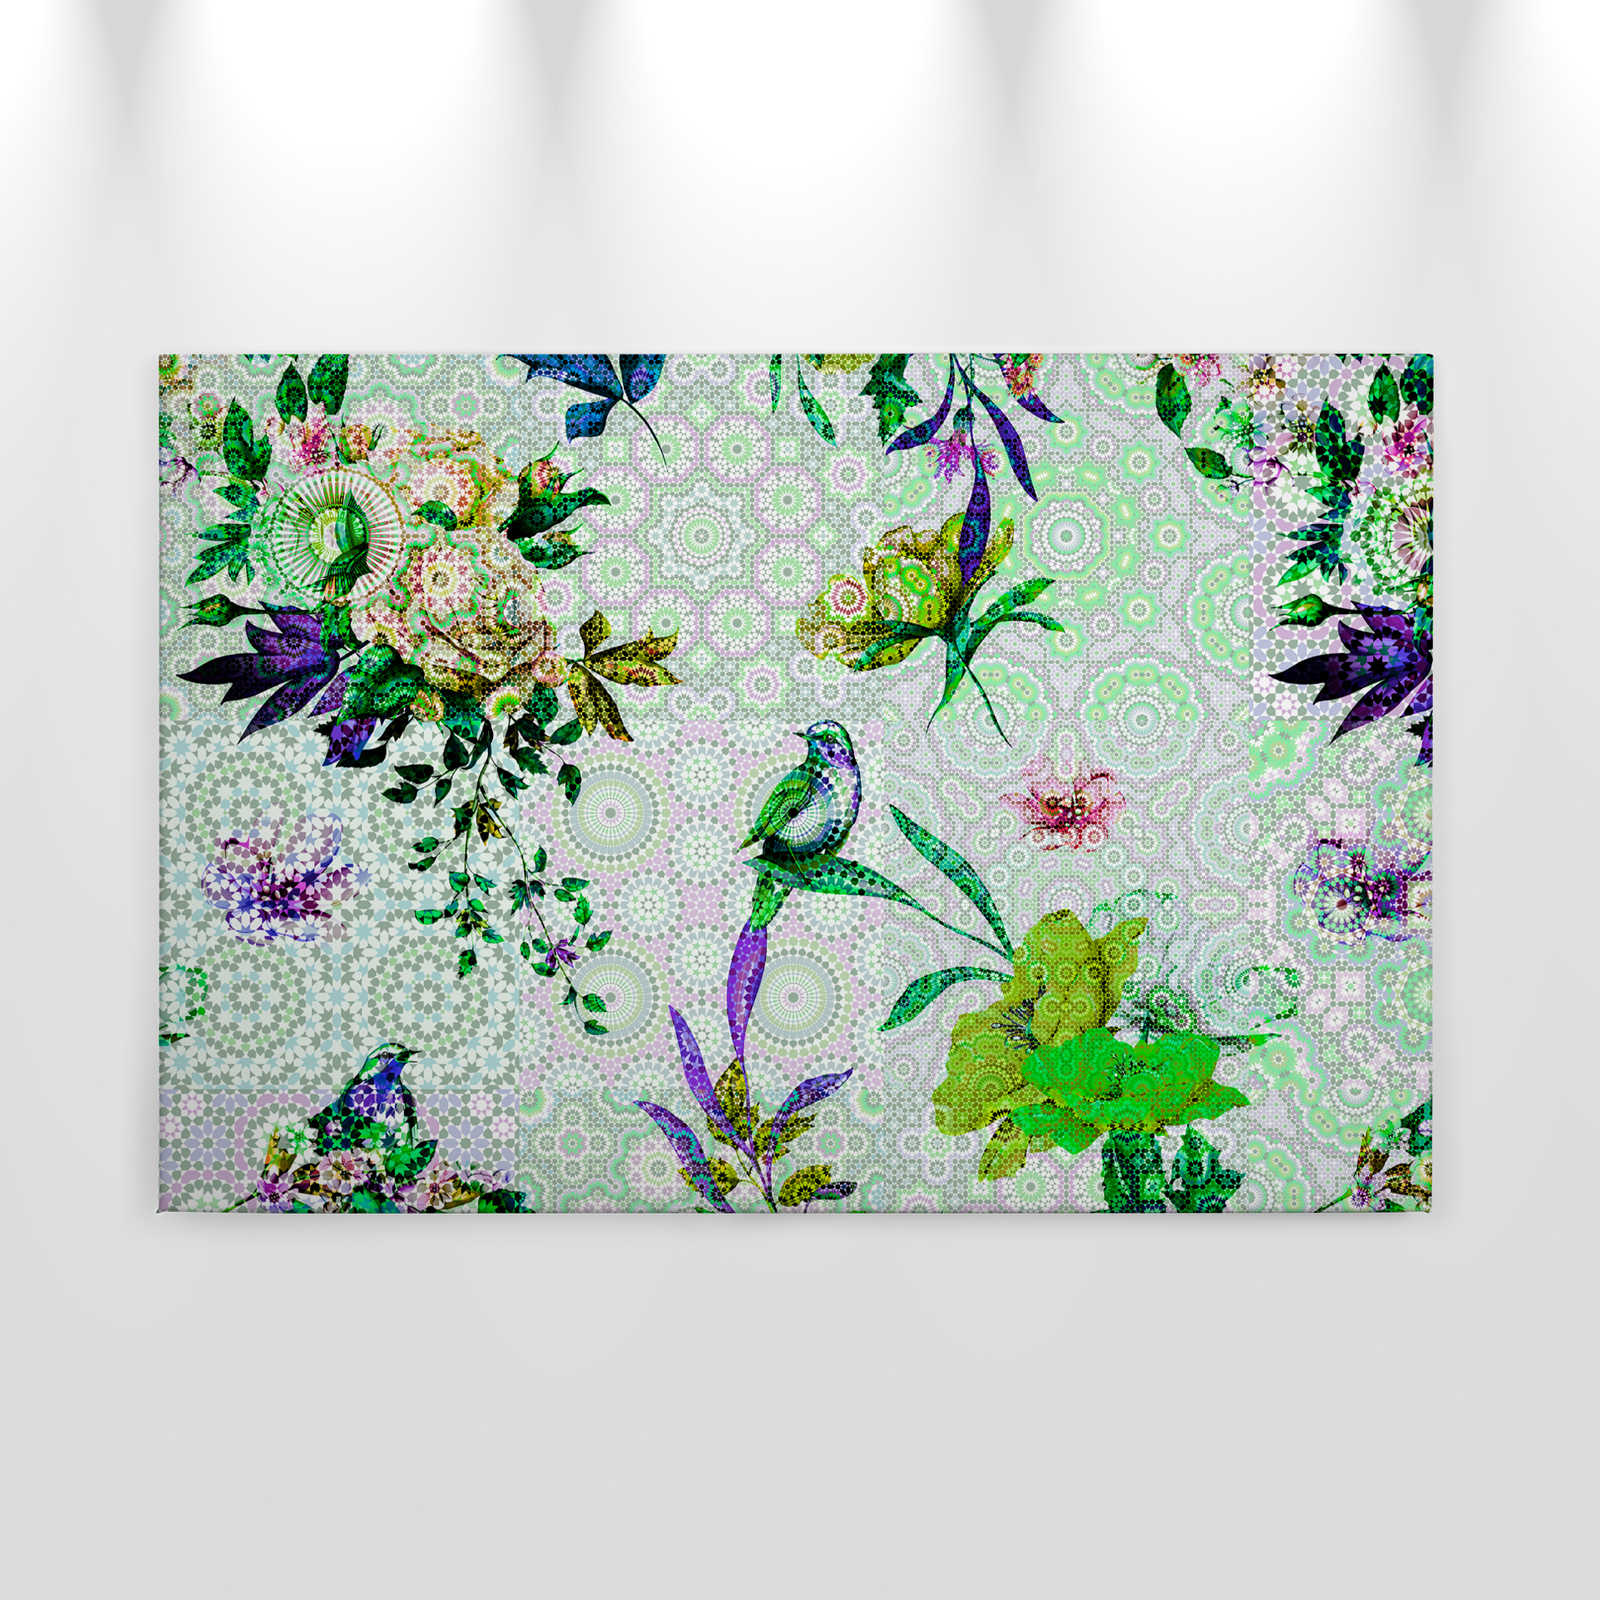             Quadro su tela con fiori e design moderno a mosaico - 0,90 m x 0,60 m
        